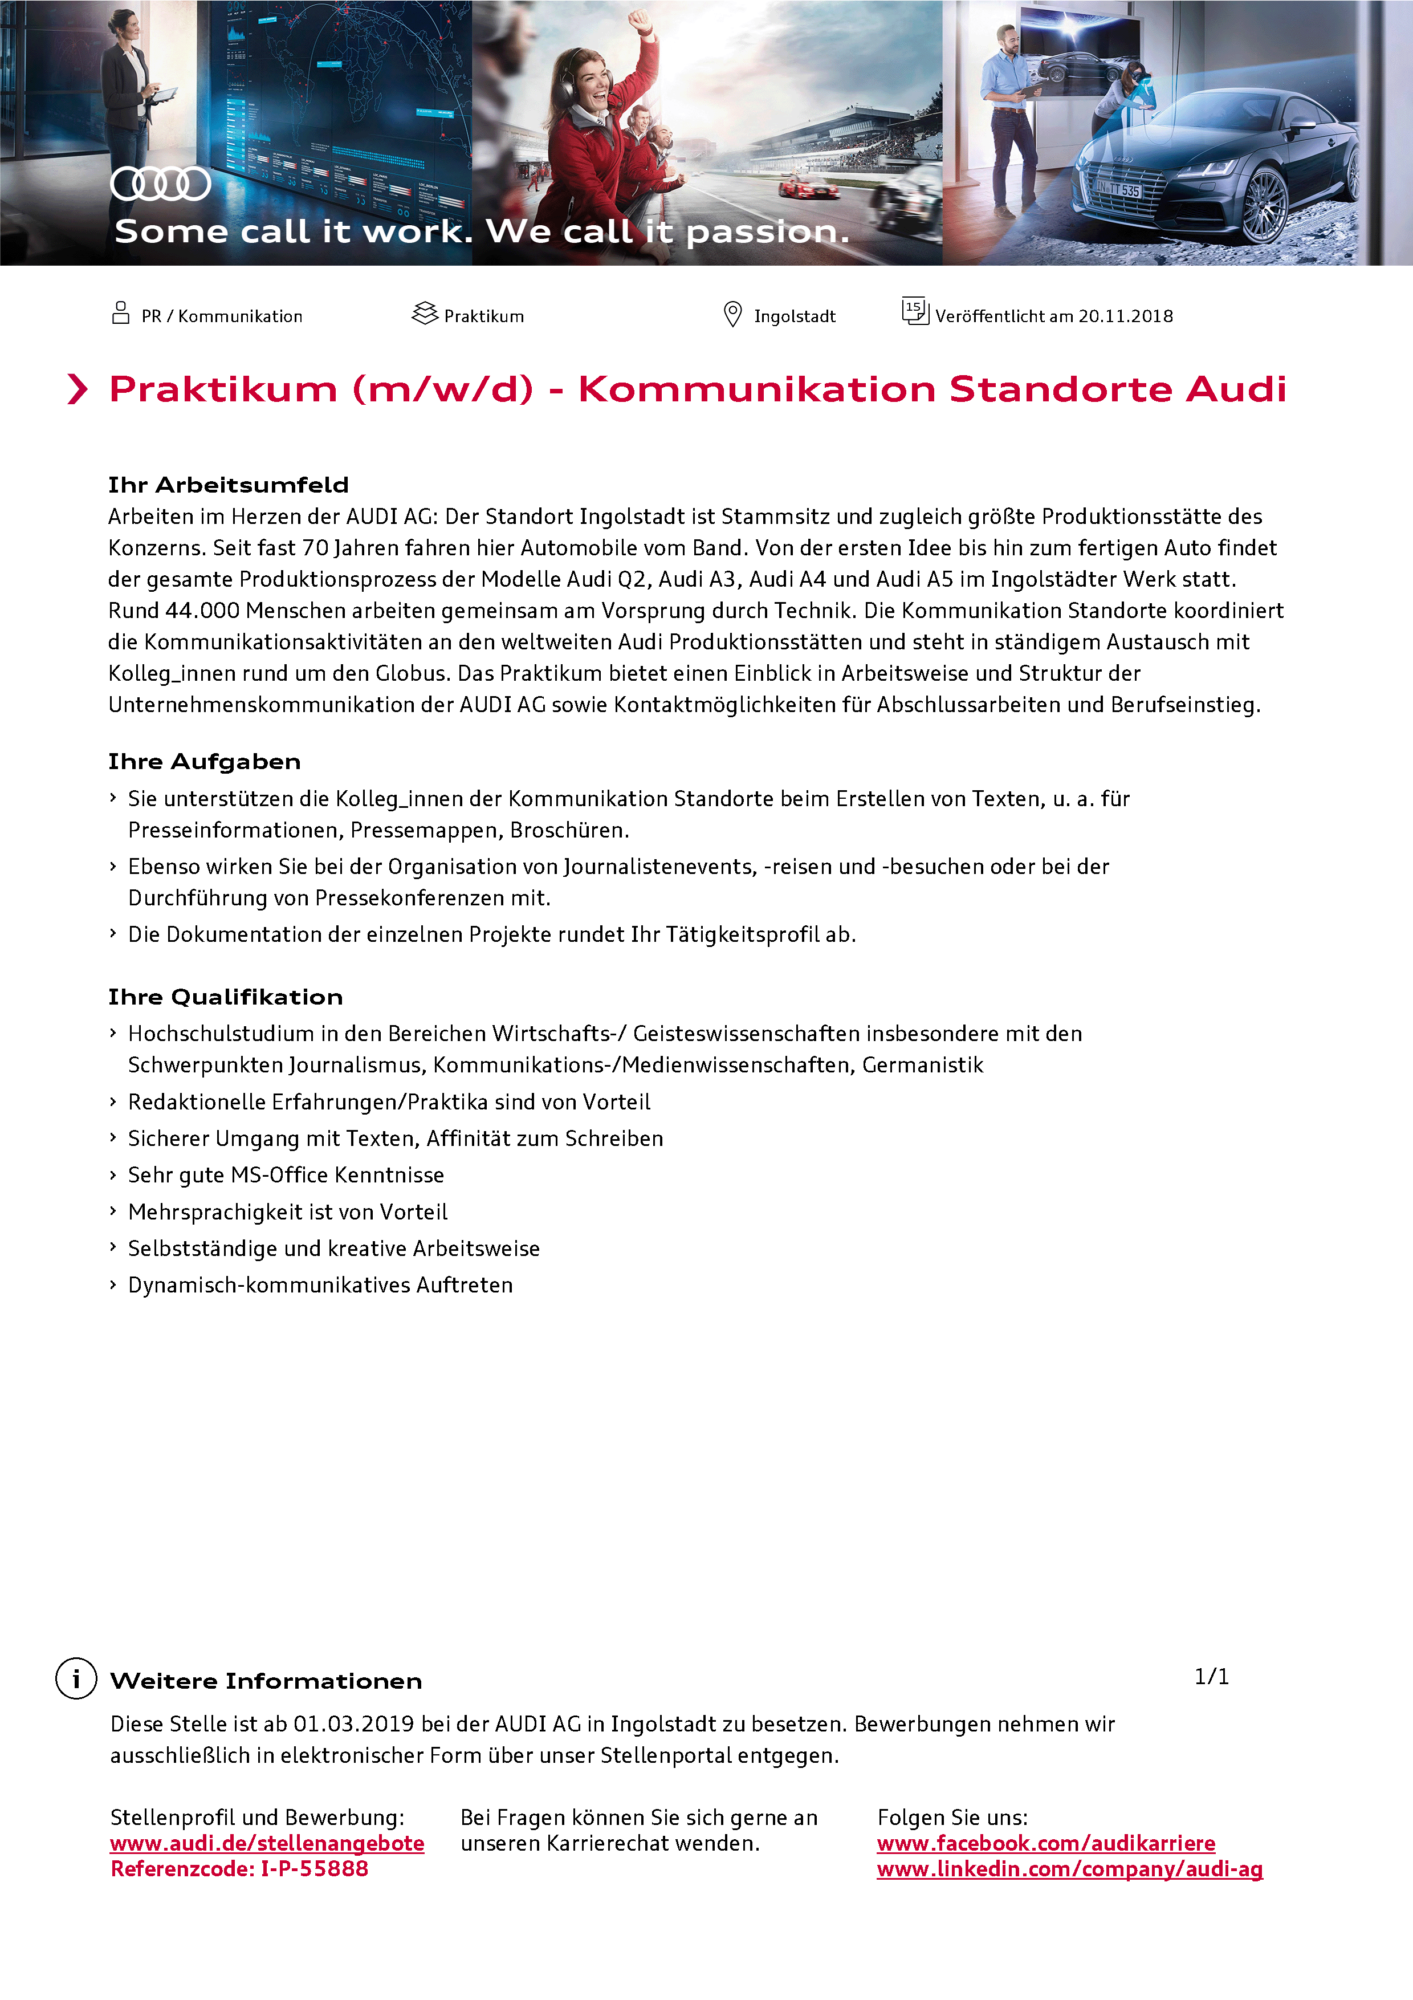 Zum Artikel "Praktikum bei Audi in der Kommunikation Standorte Audi"